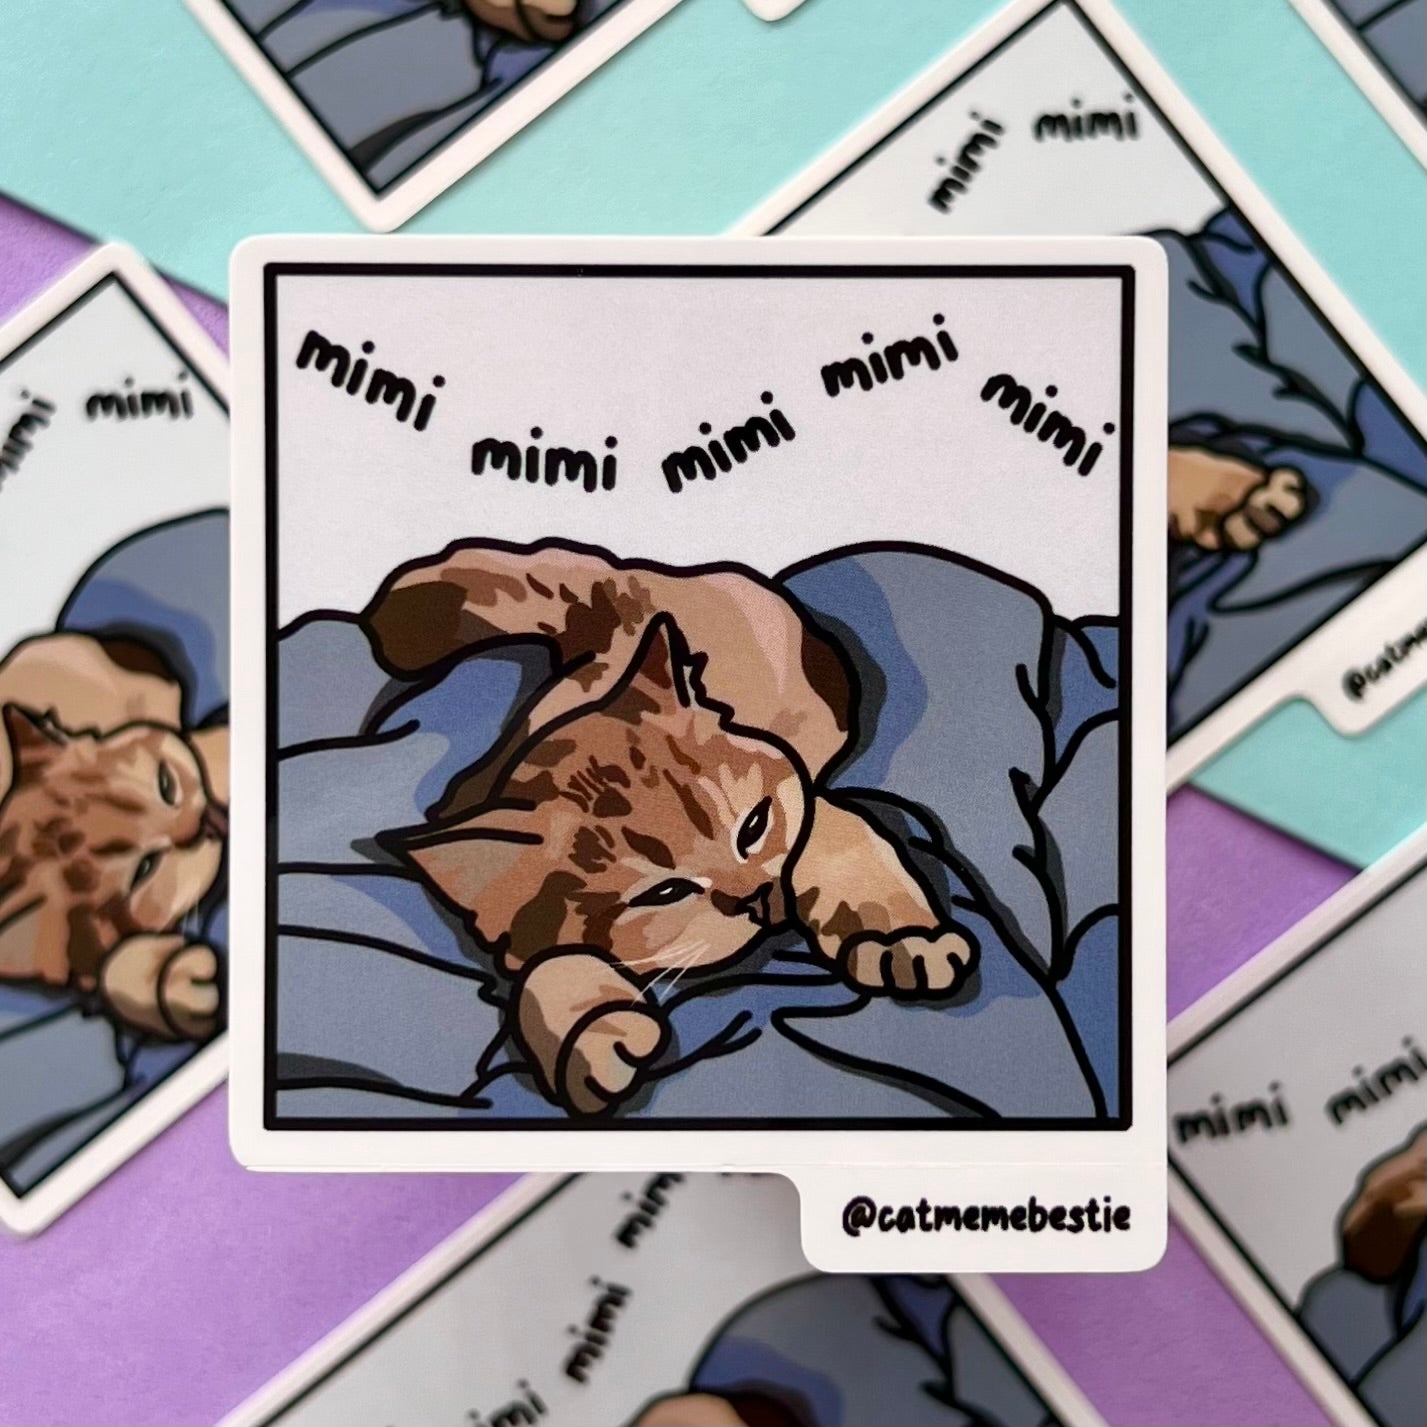 "mimimi" sticker